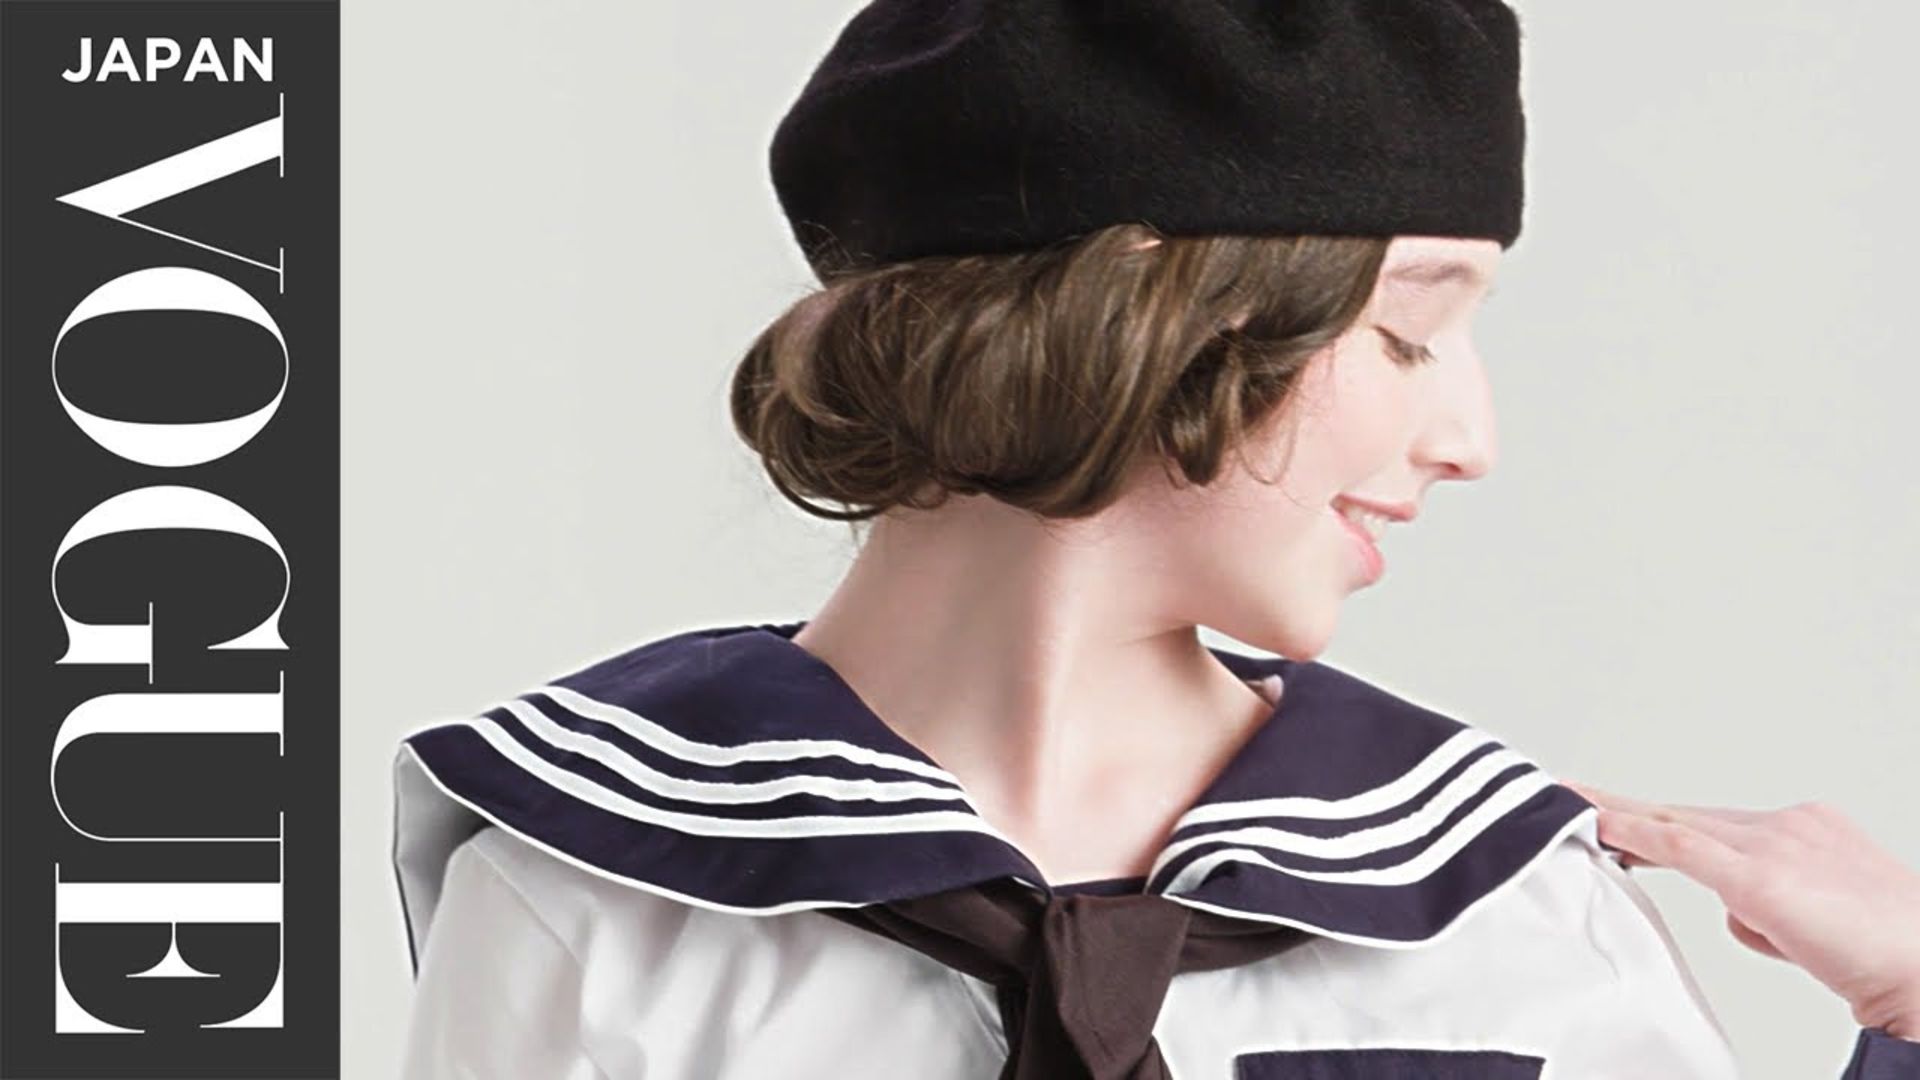 女子の学校制服、100年の歴史。| 100 Years of